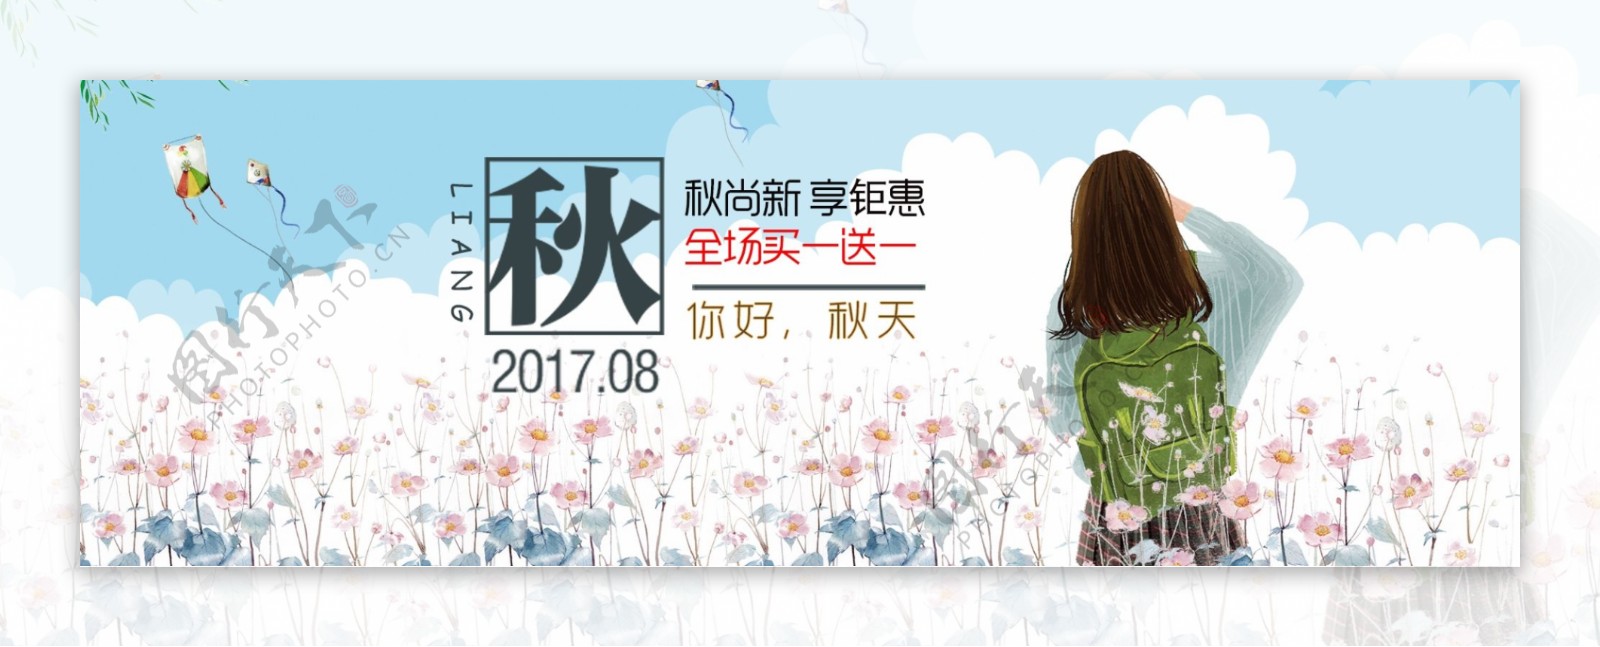 电商海报淘宝女装秋季上新文艺风格促销banner